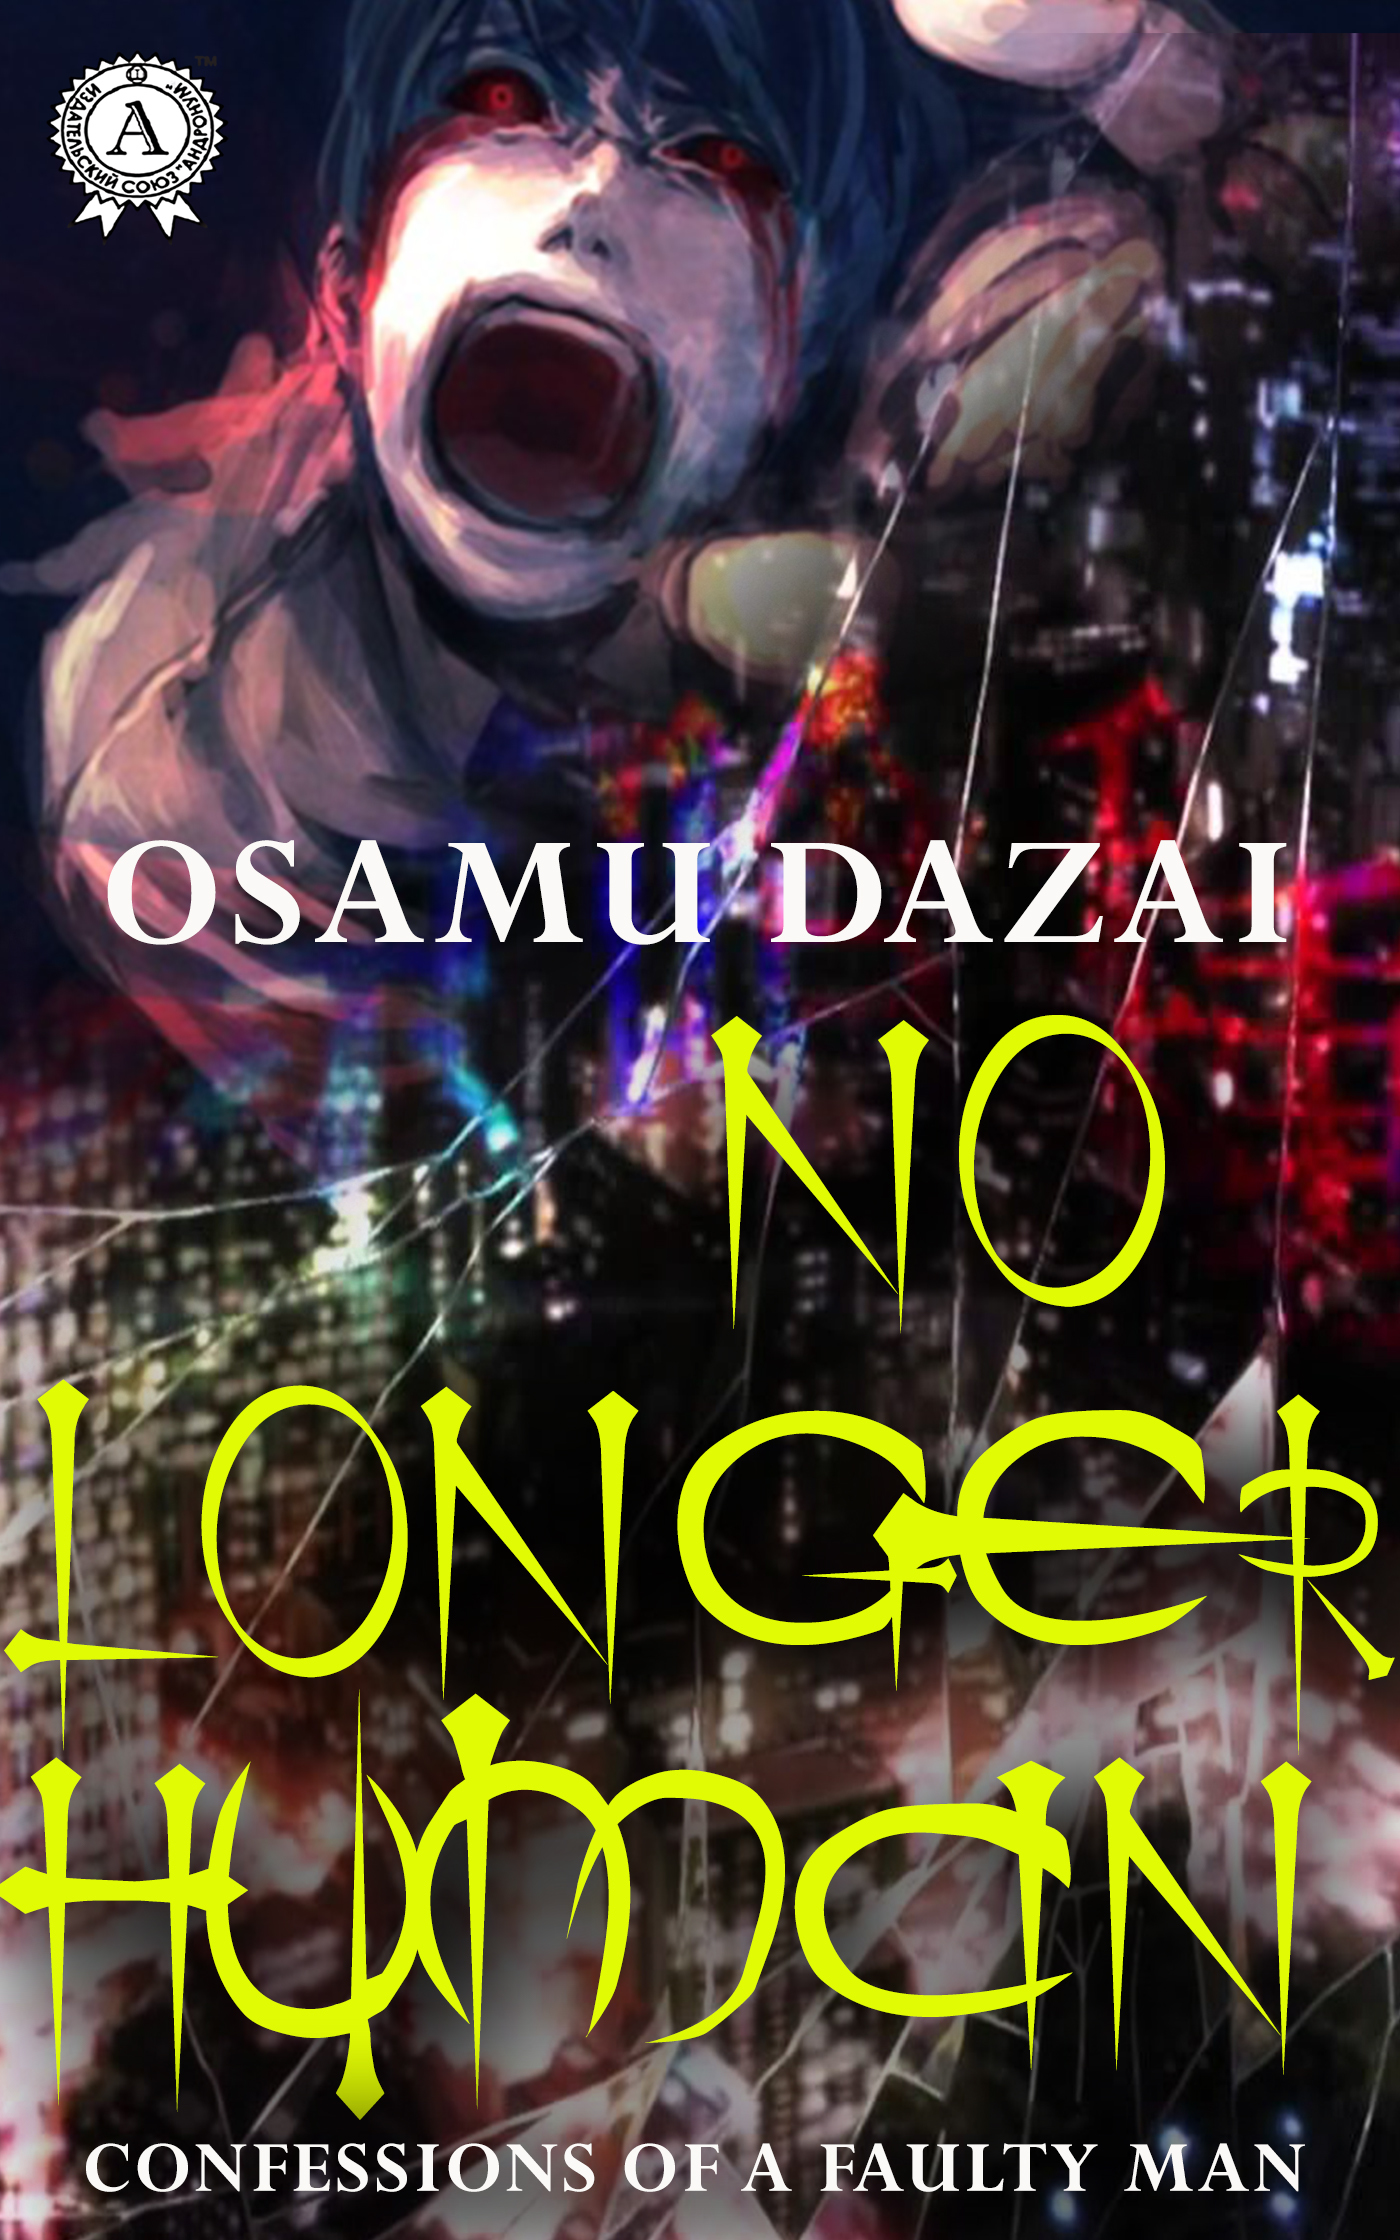 Книга No Longer Human из серии , созданная Osamu Dazai, может относится к жанру Зарубежная классика, Литература 20 века. Стоимость электронной книги No Longer Human с идентификатором 50810486 составляет 199.00 руб.